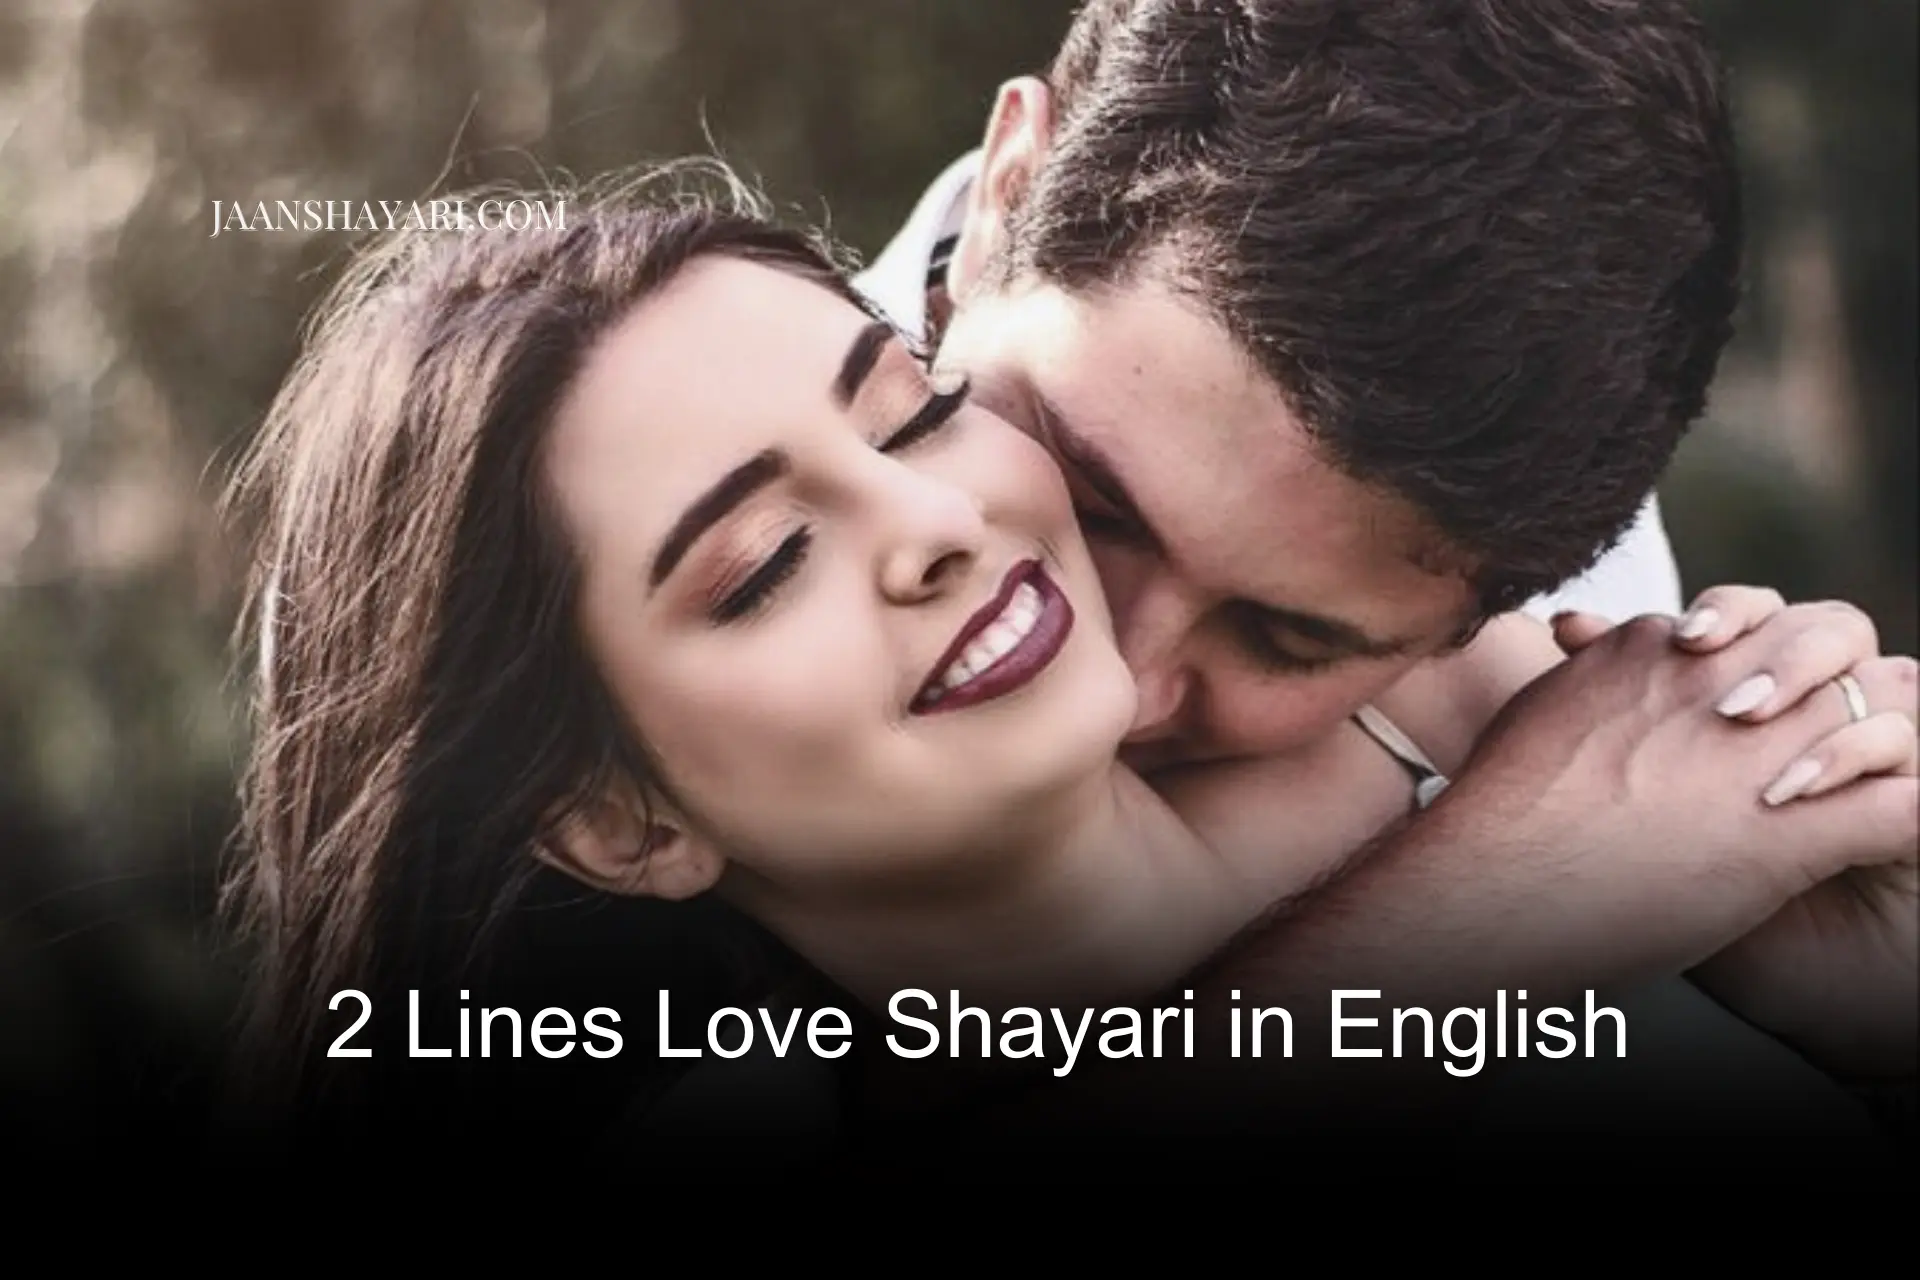 2 Lines Love Shayari in English, shayari english mein, best friend shayari in english 2 line, english mein shayari, happy shayari in english, love shayari english hindi,